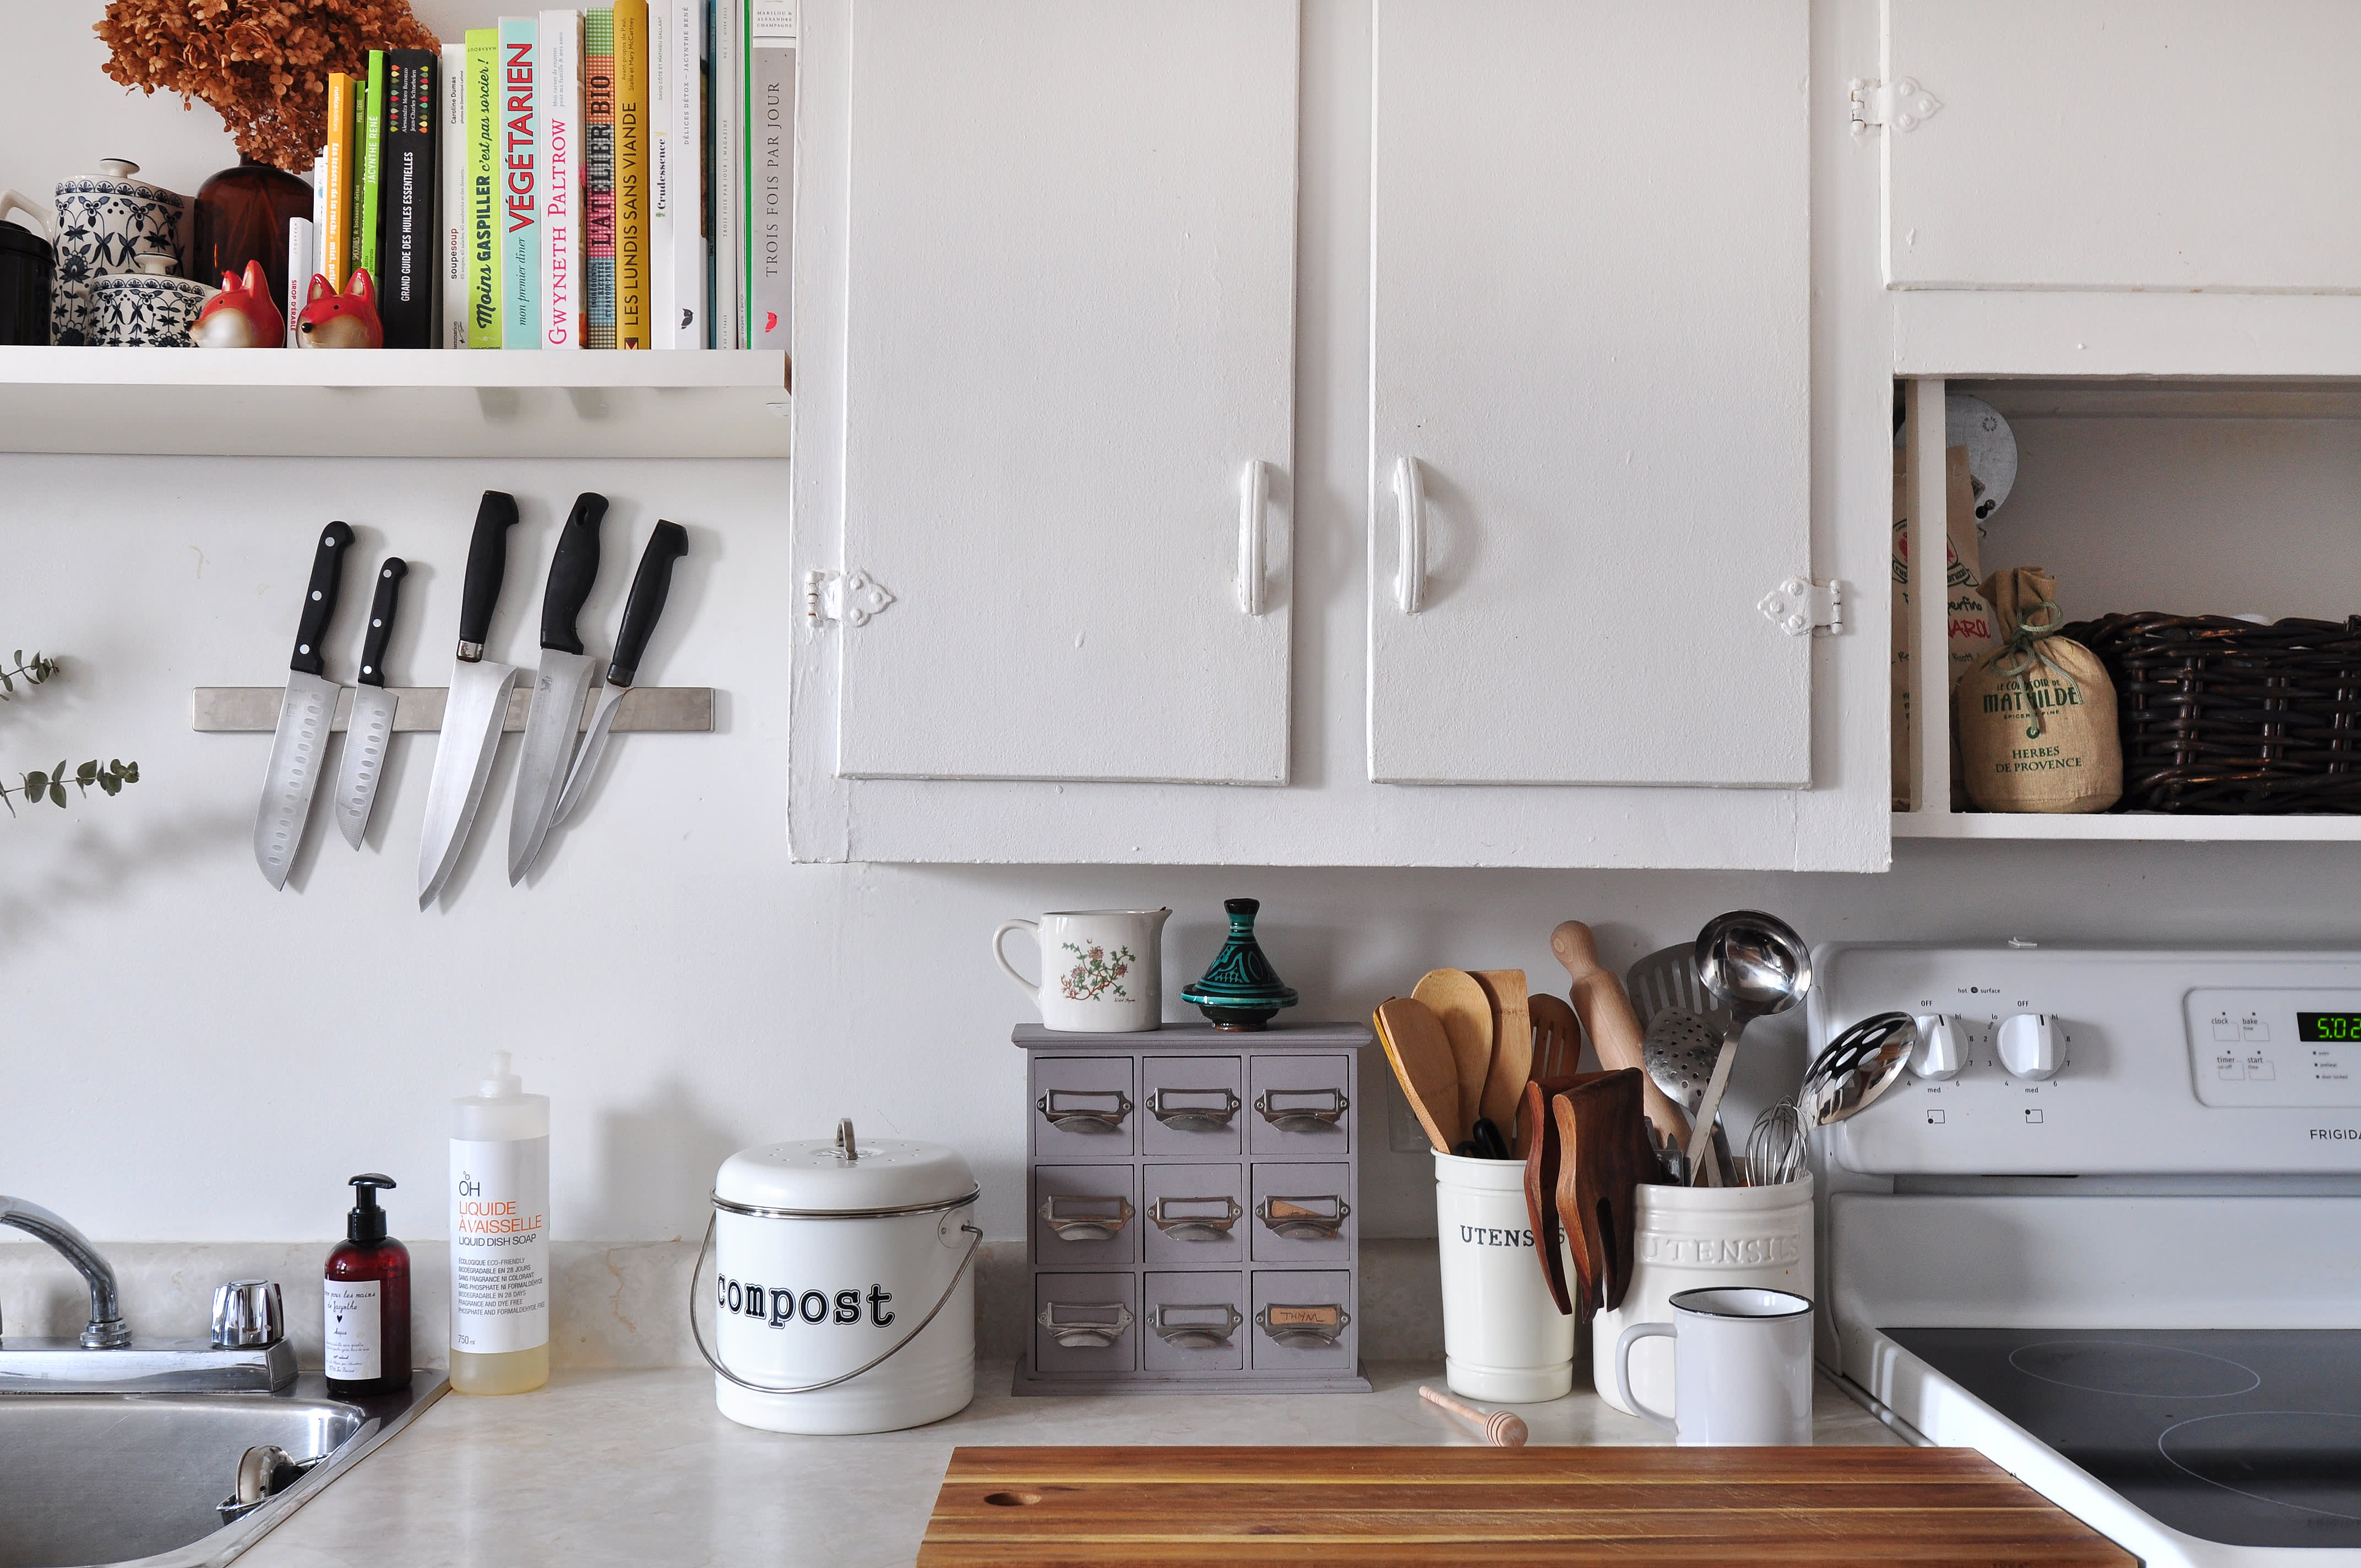 20 Genius Storage Ideas to Maximize Your Small Kitchen